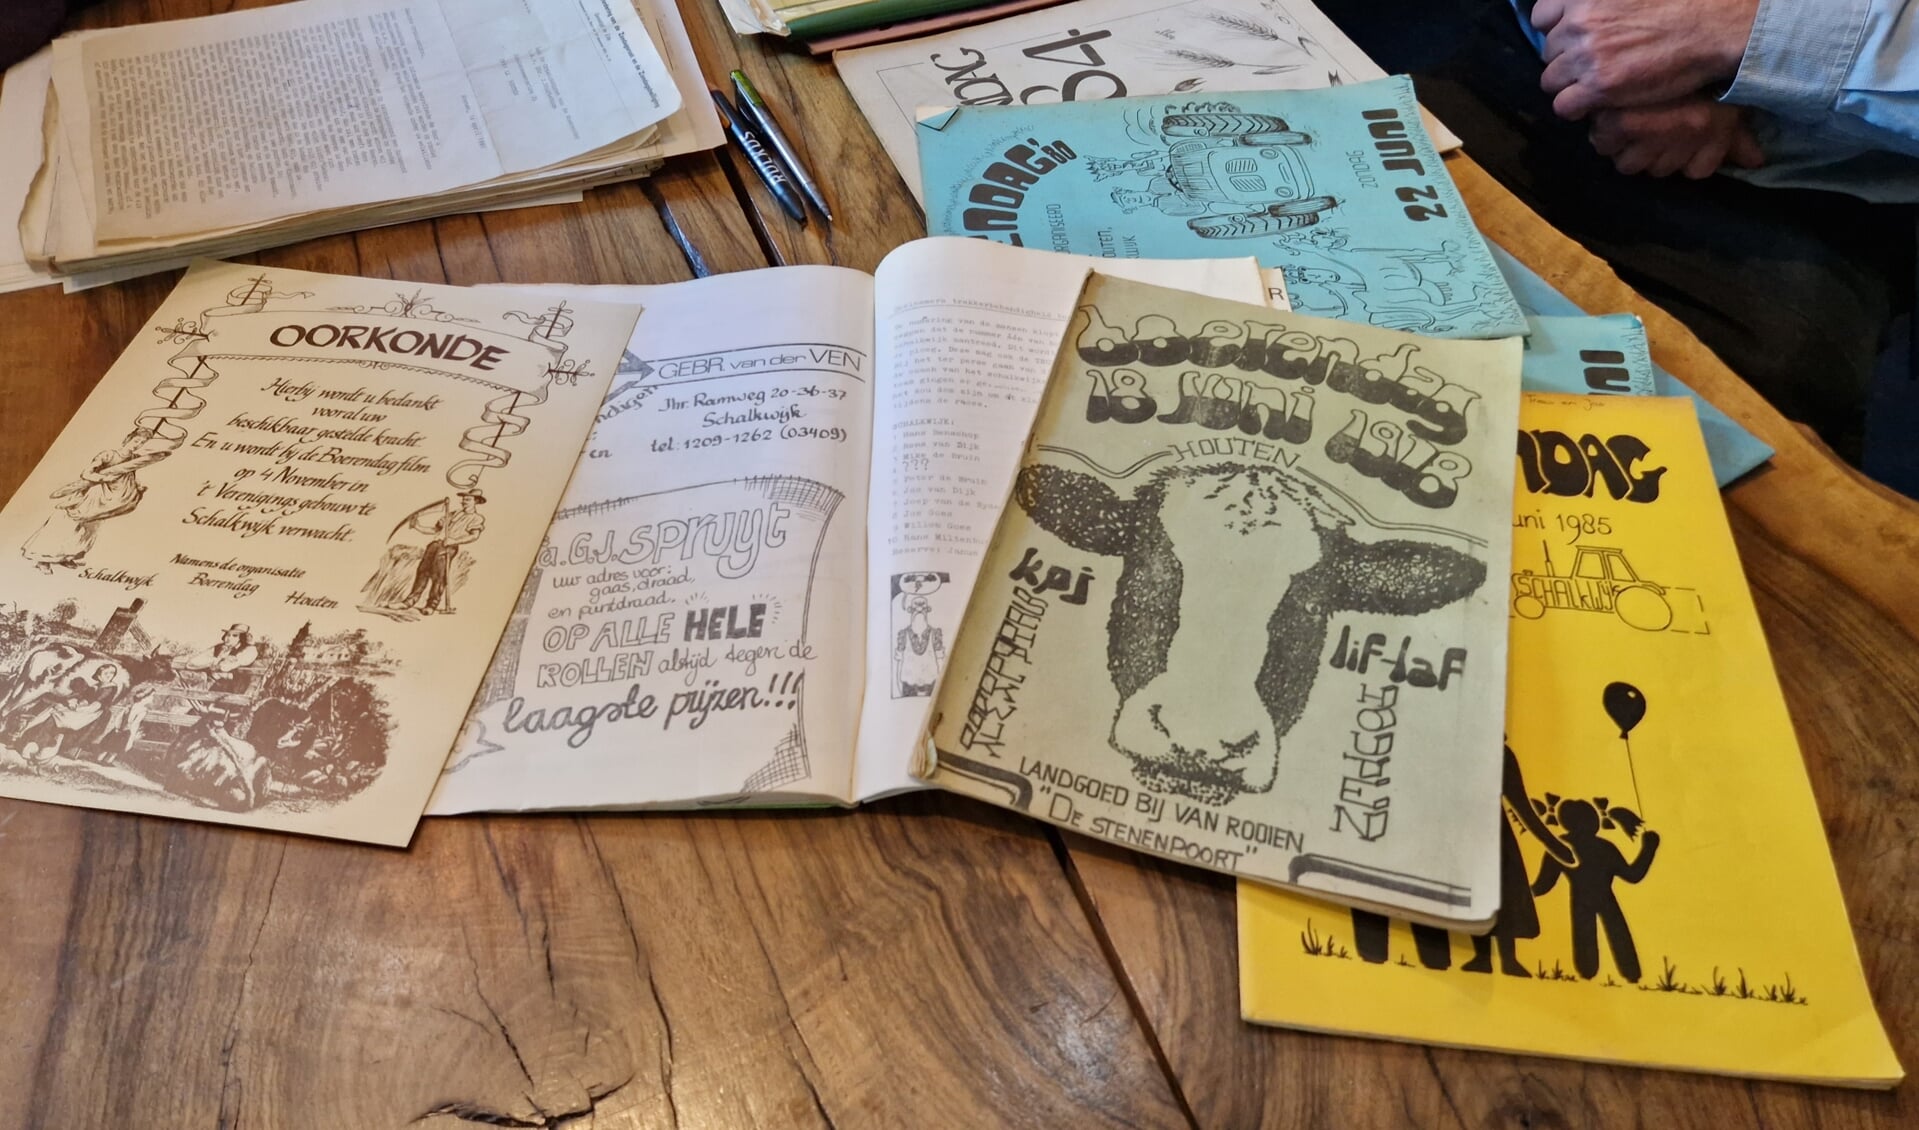 Verschillende magazines van de Boerendagen en papieren van de vergaderingen van toen.